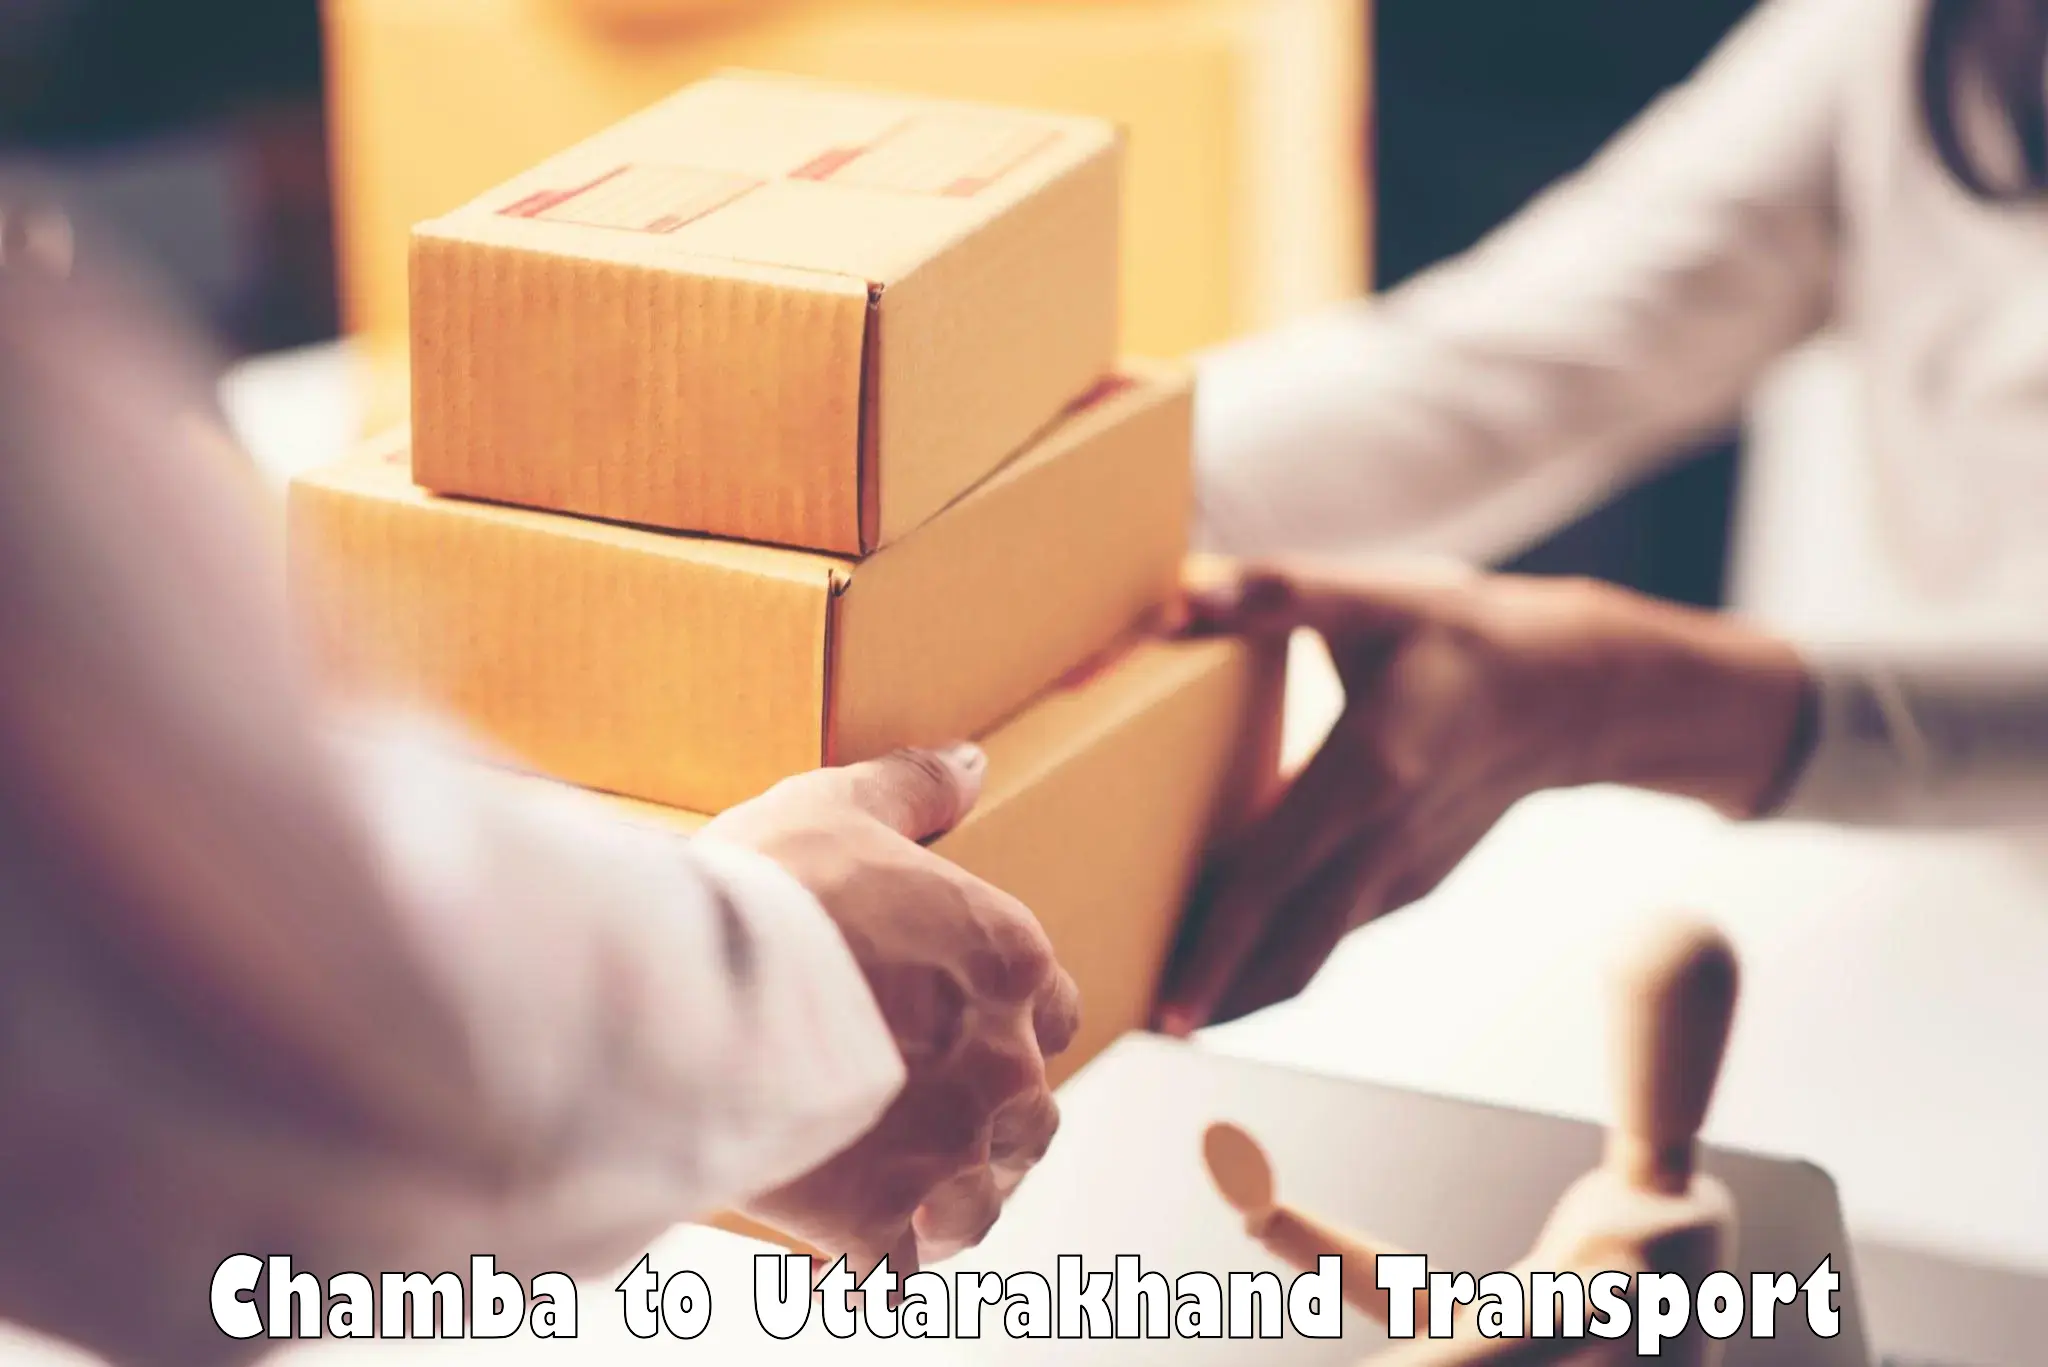 Nearest transport service Chamba to IIT Roorkee